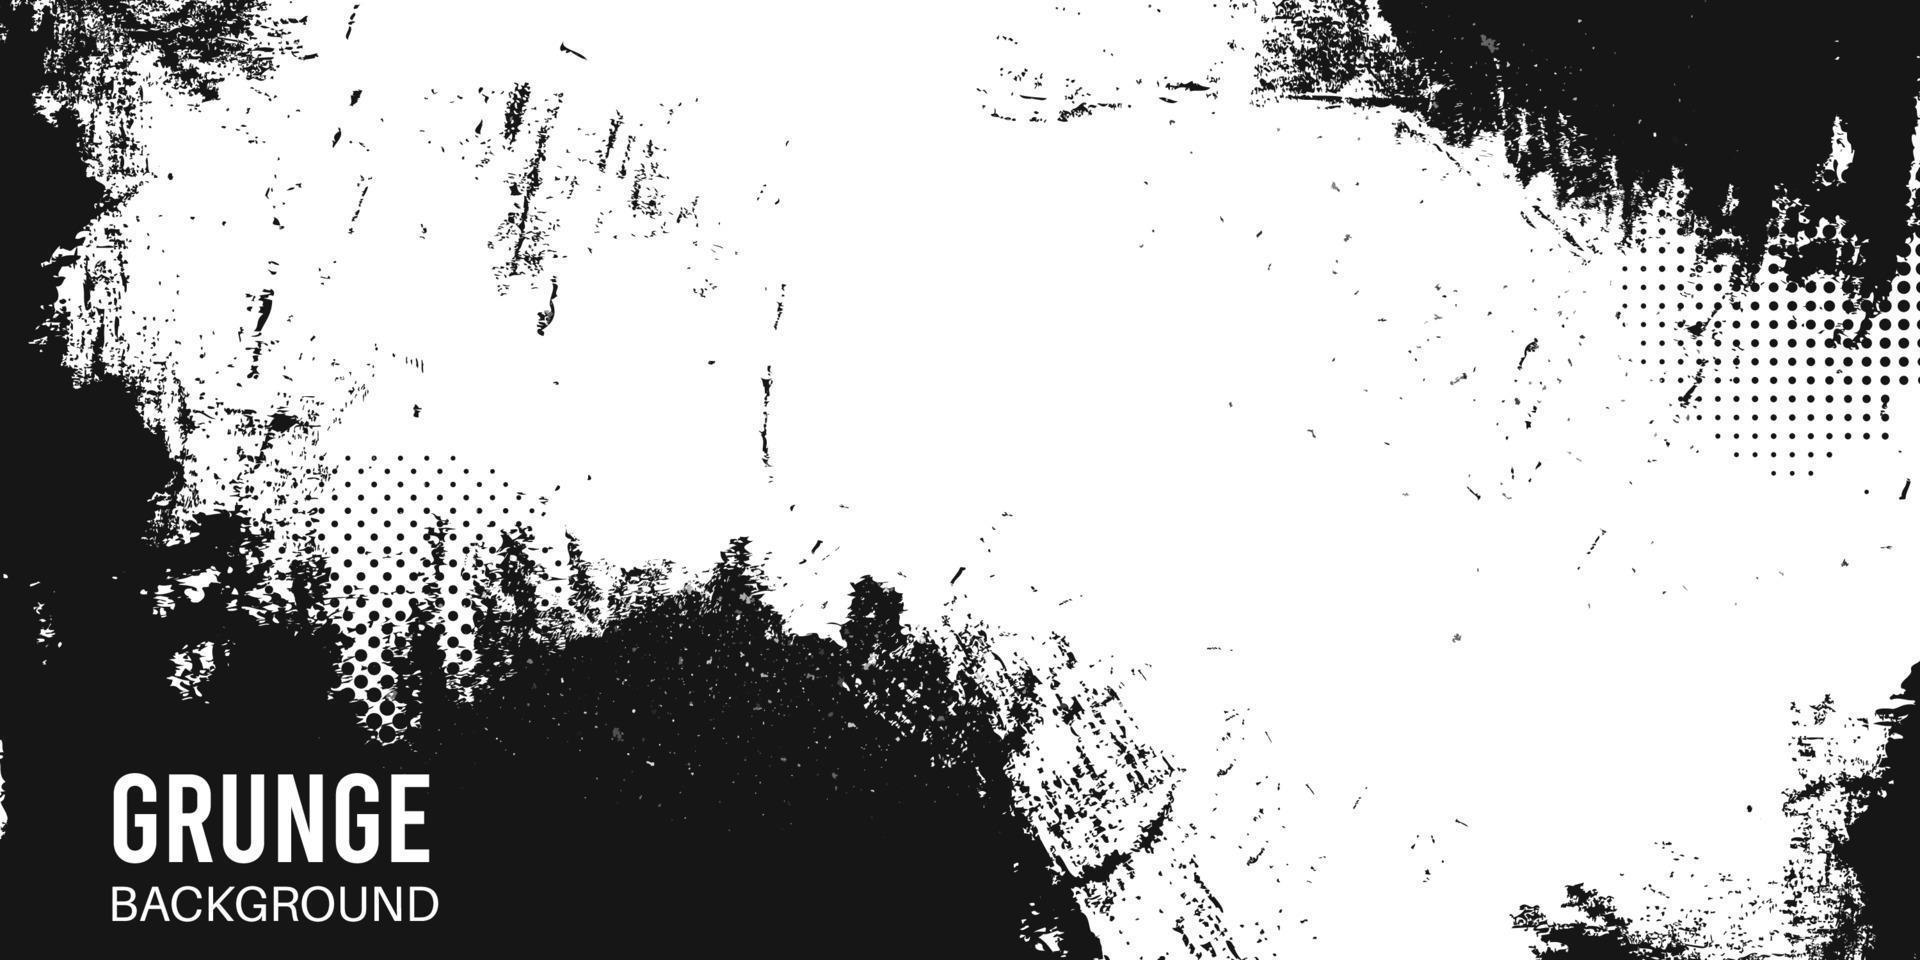 zwart-wit vector grunge getextureerde achtergrond voor spandoek, poster, brochure